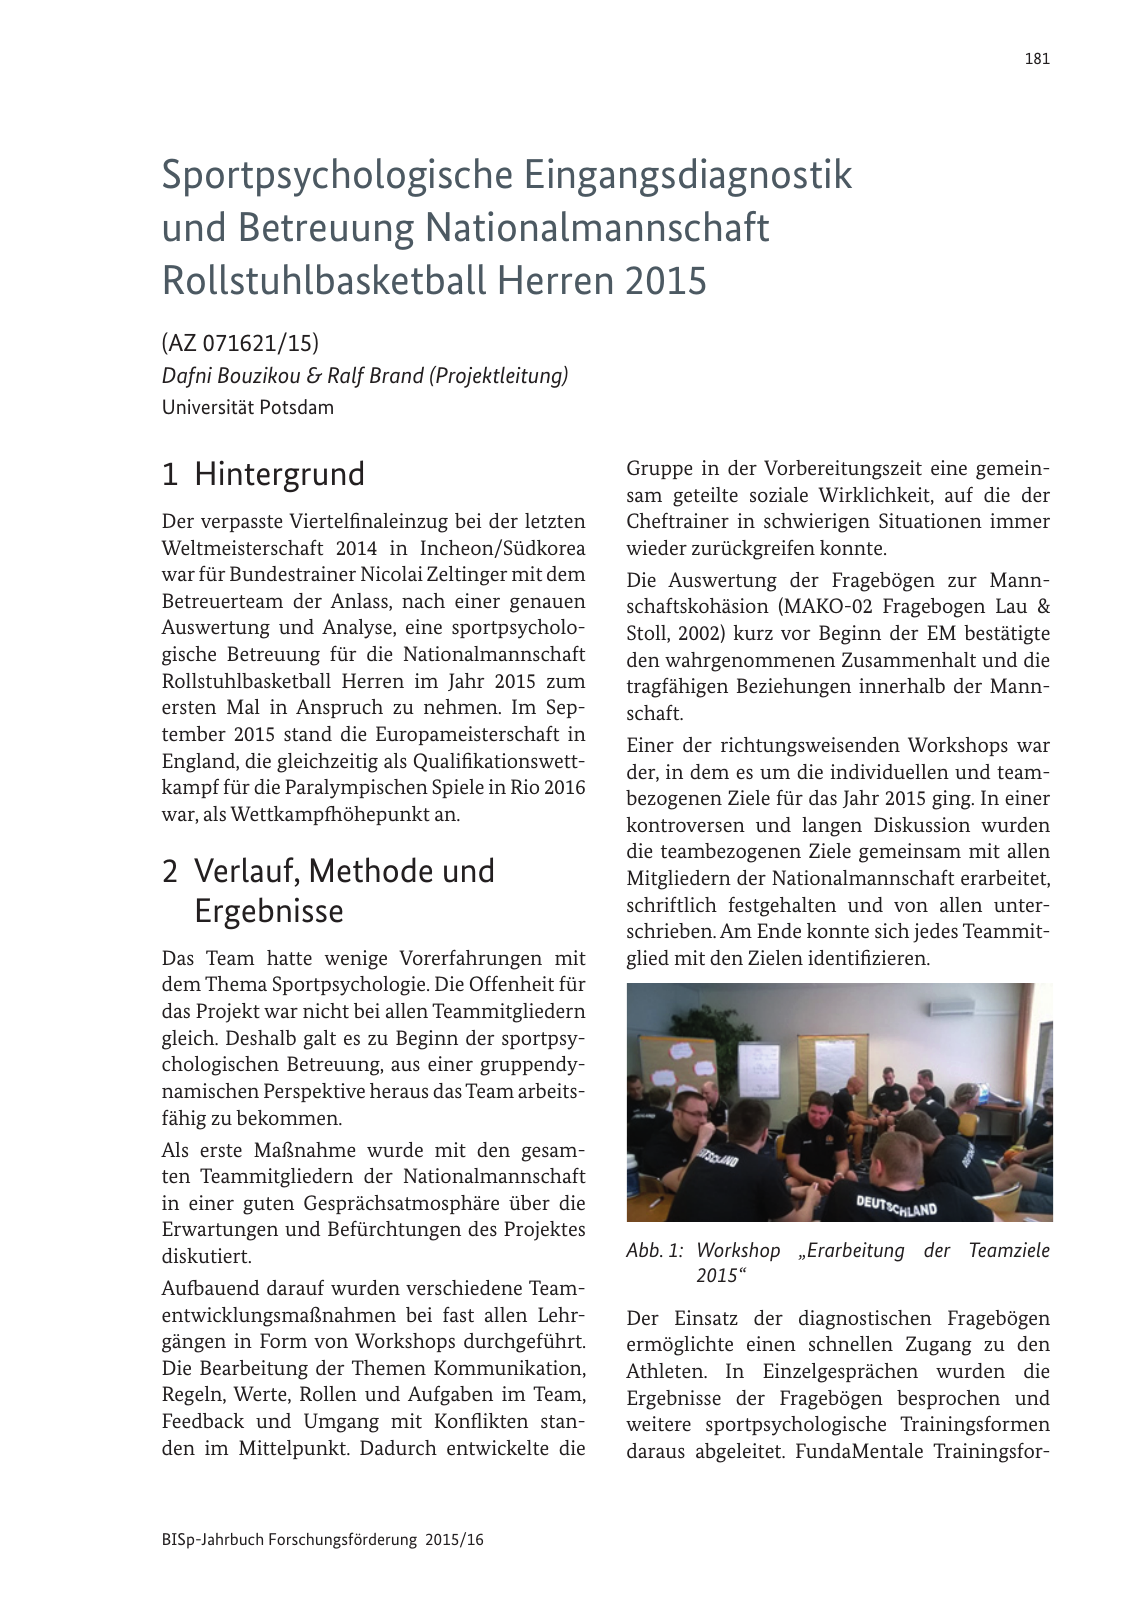 Vorschau BISp-Jahrbuch Forschungsförderung 2015/16 Seite 183